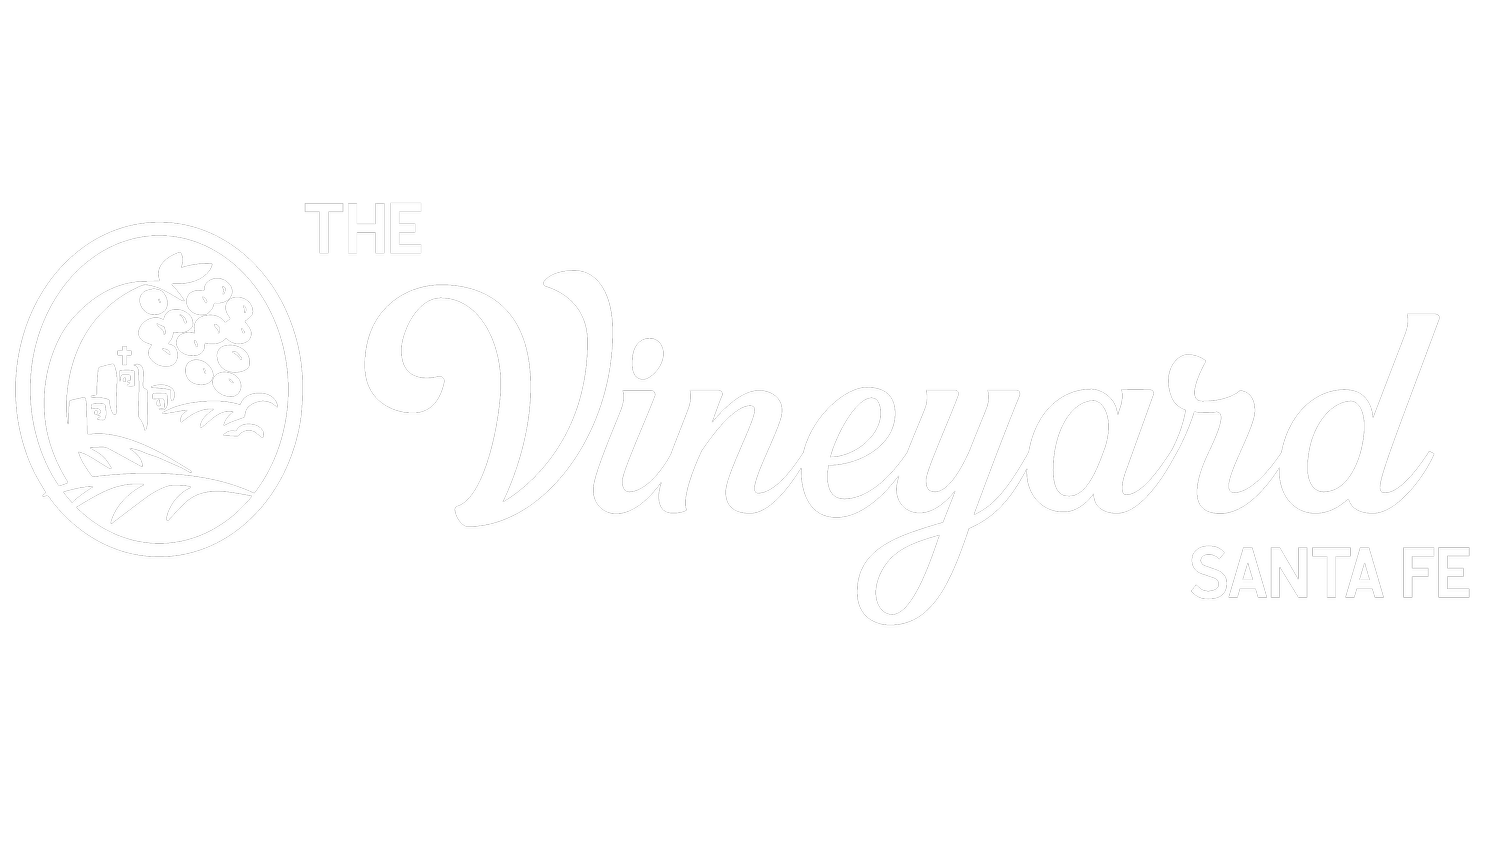 The Vineyard Santa Fe